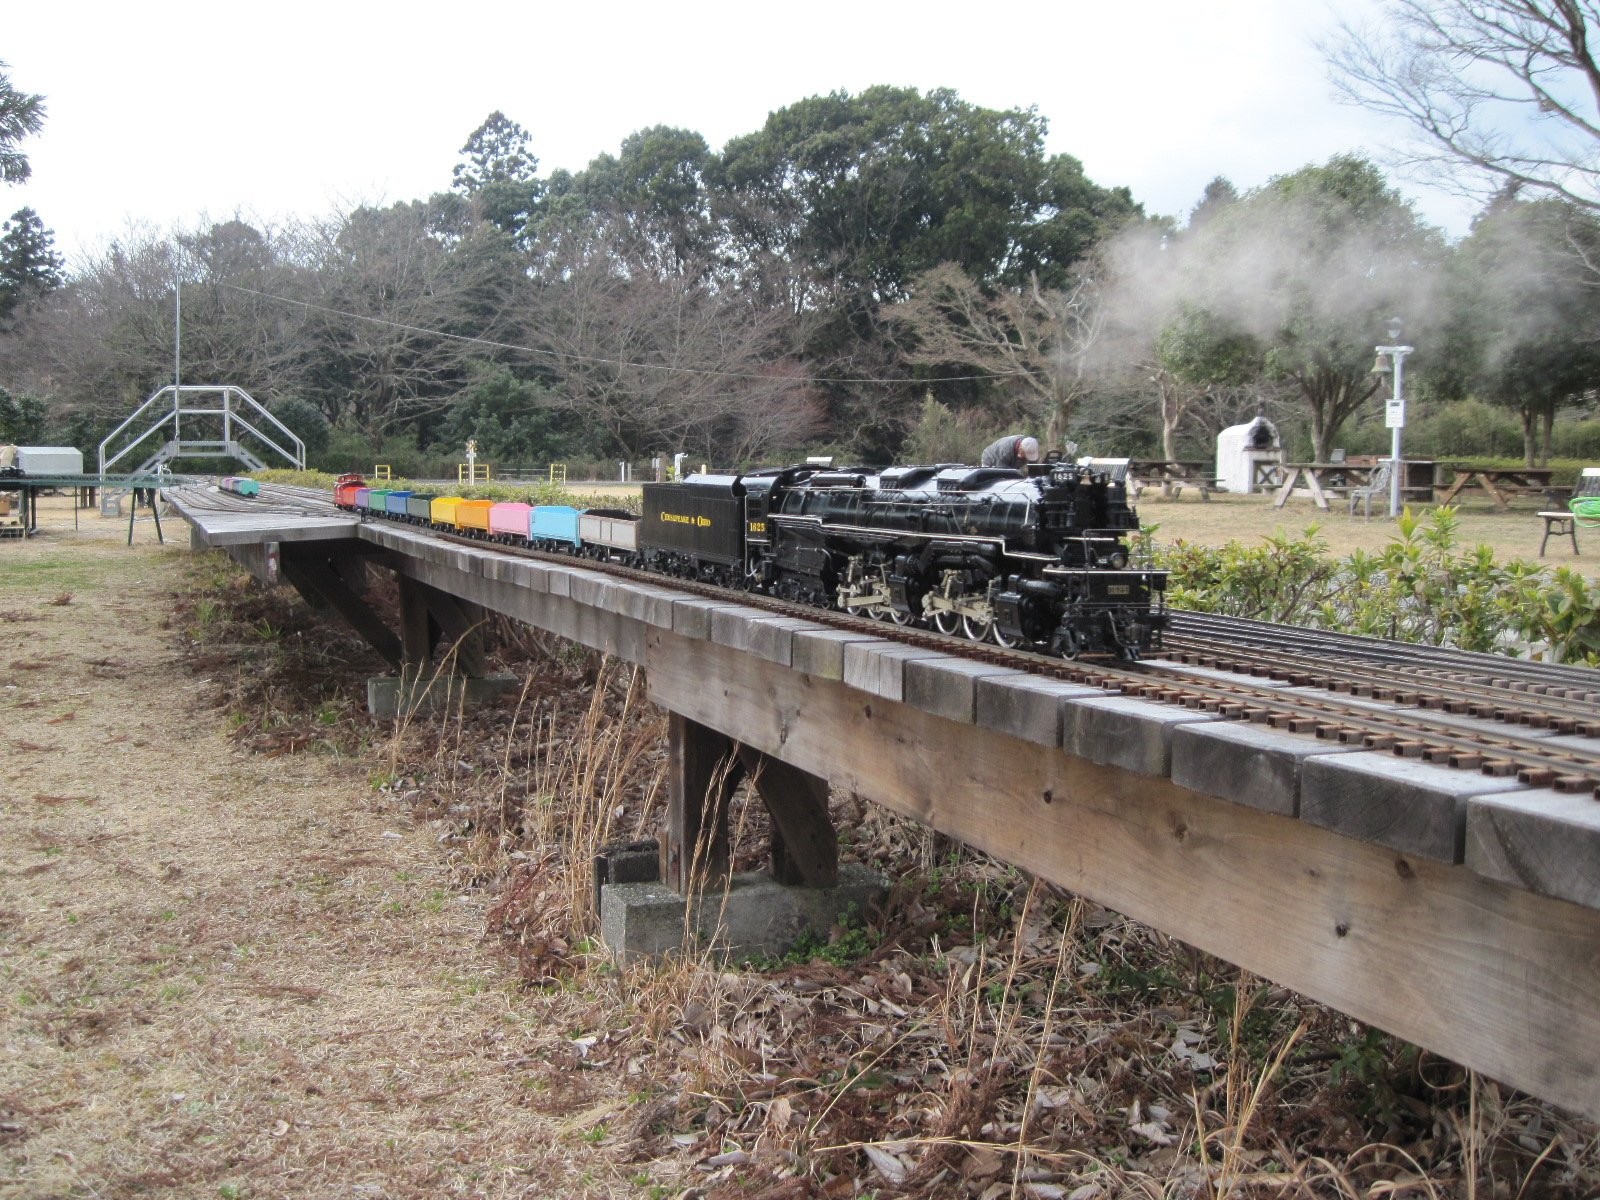 日本庭園鉄道